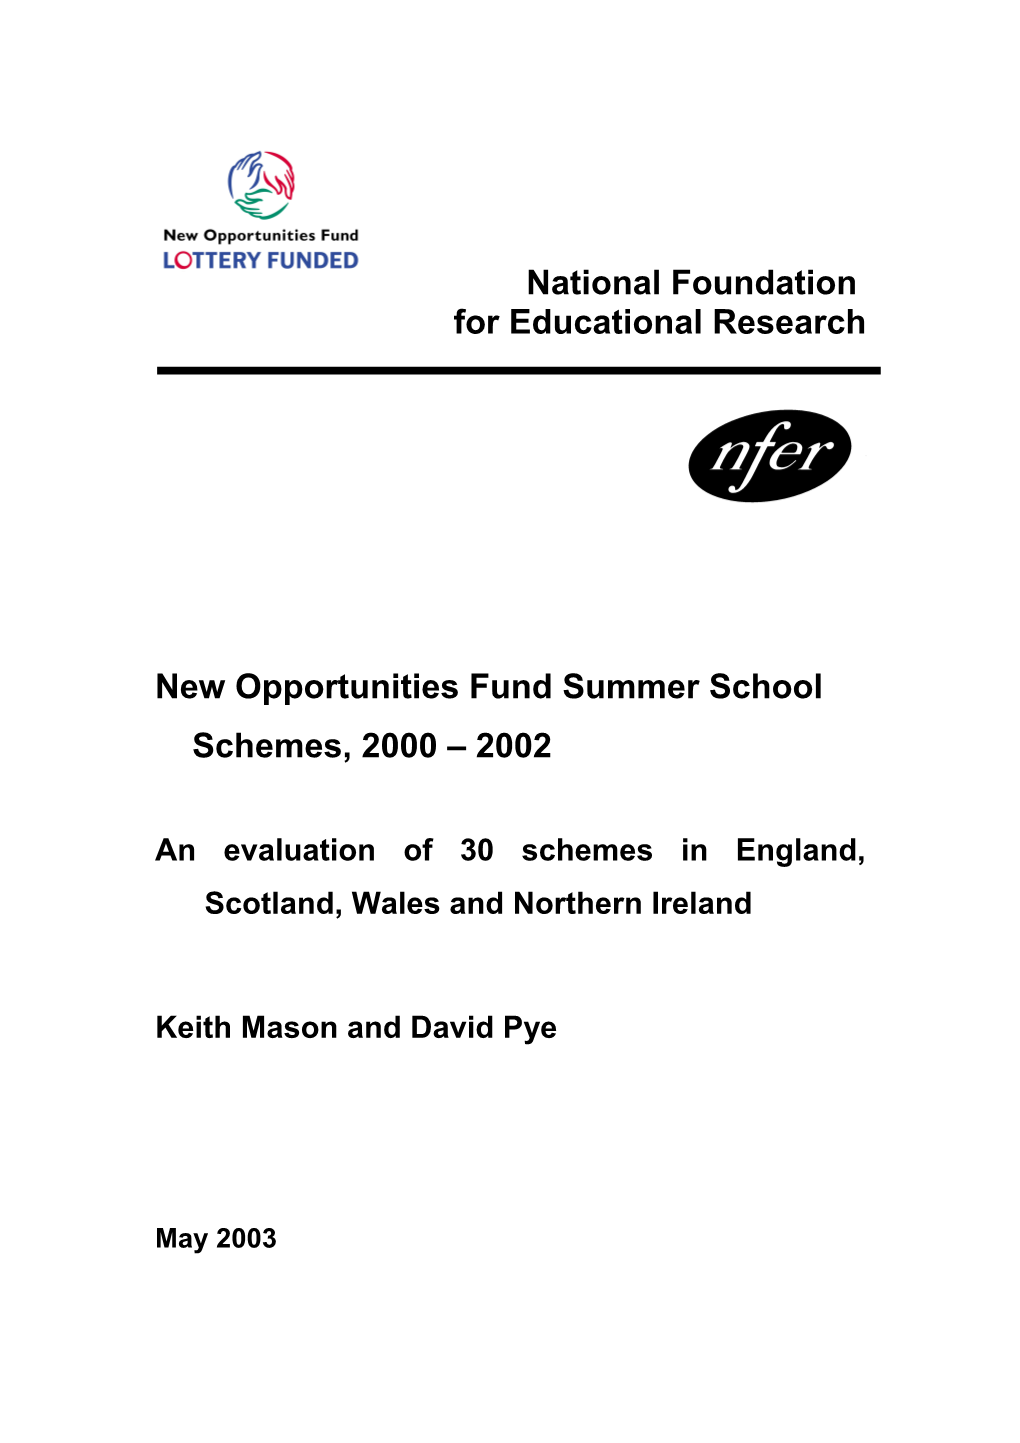 New Opportunities Fund Summer School Schemes,2000 2002